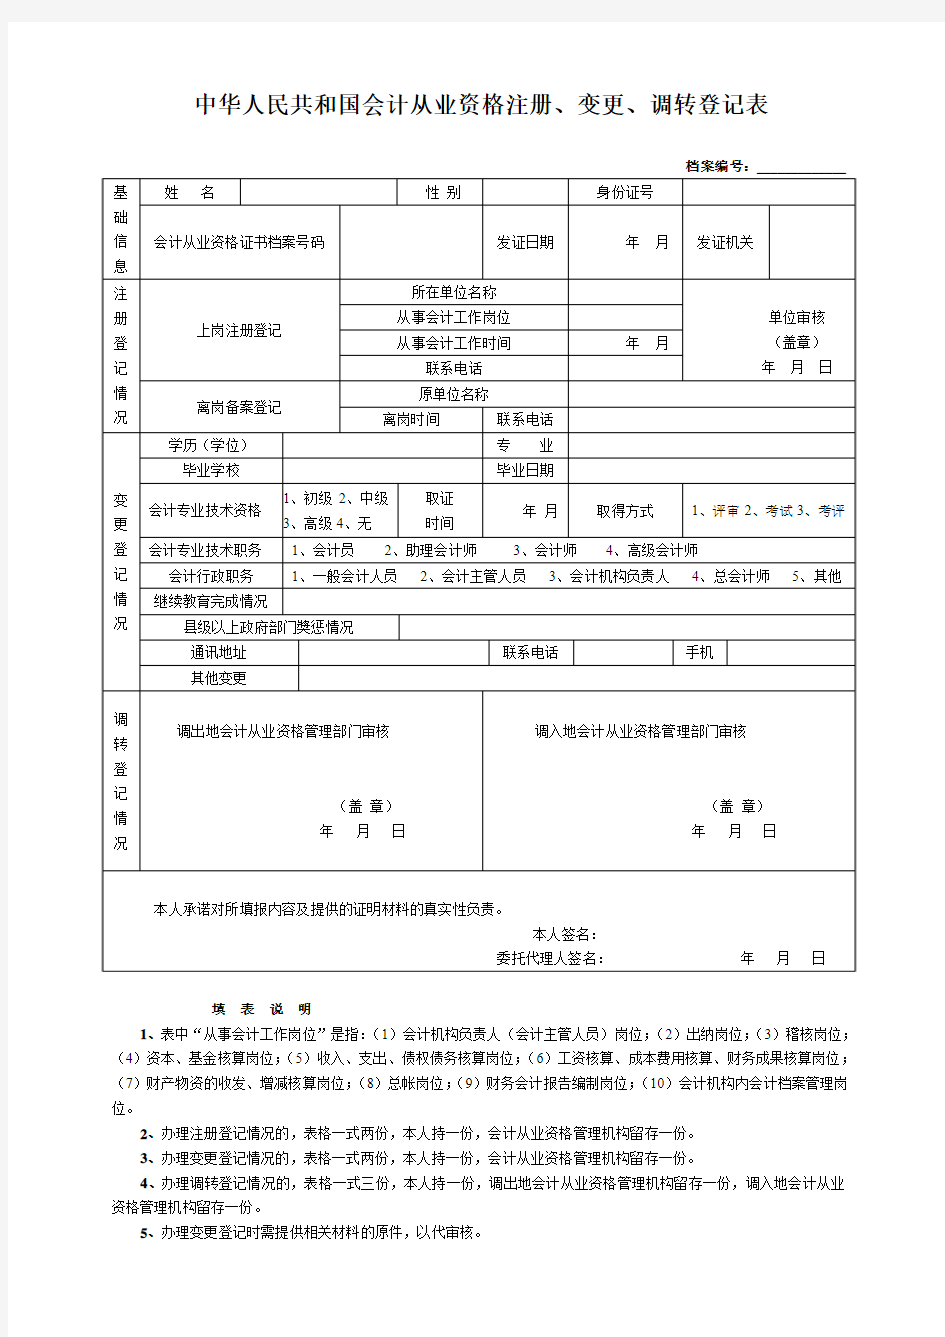 中华人民共和国会计从业资格注册变更调转登记表